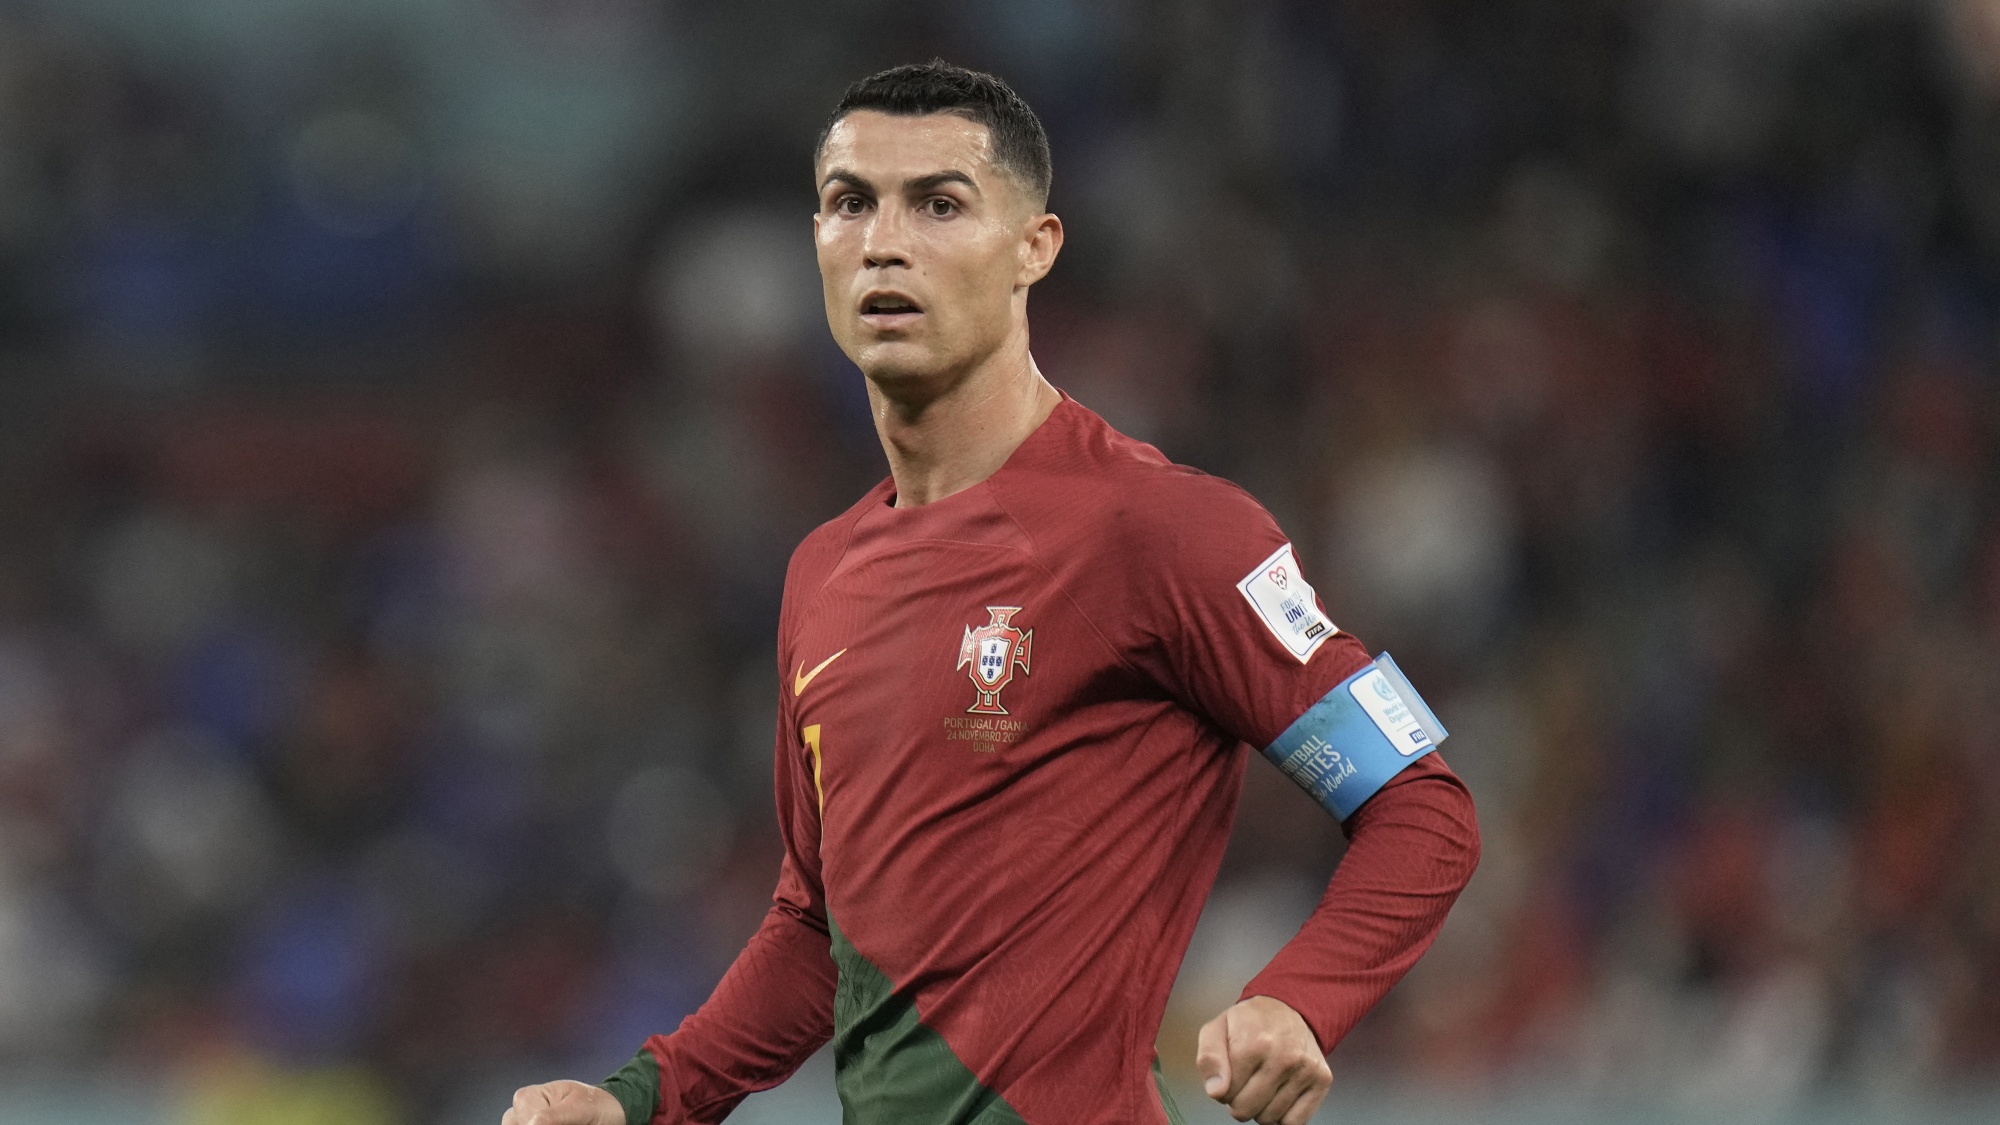 Cristiano Ronaldo marca duas vezes por Portugal e se torna o